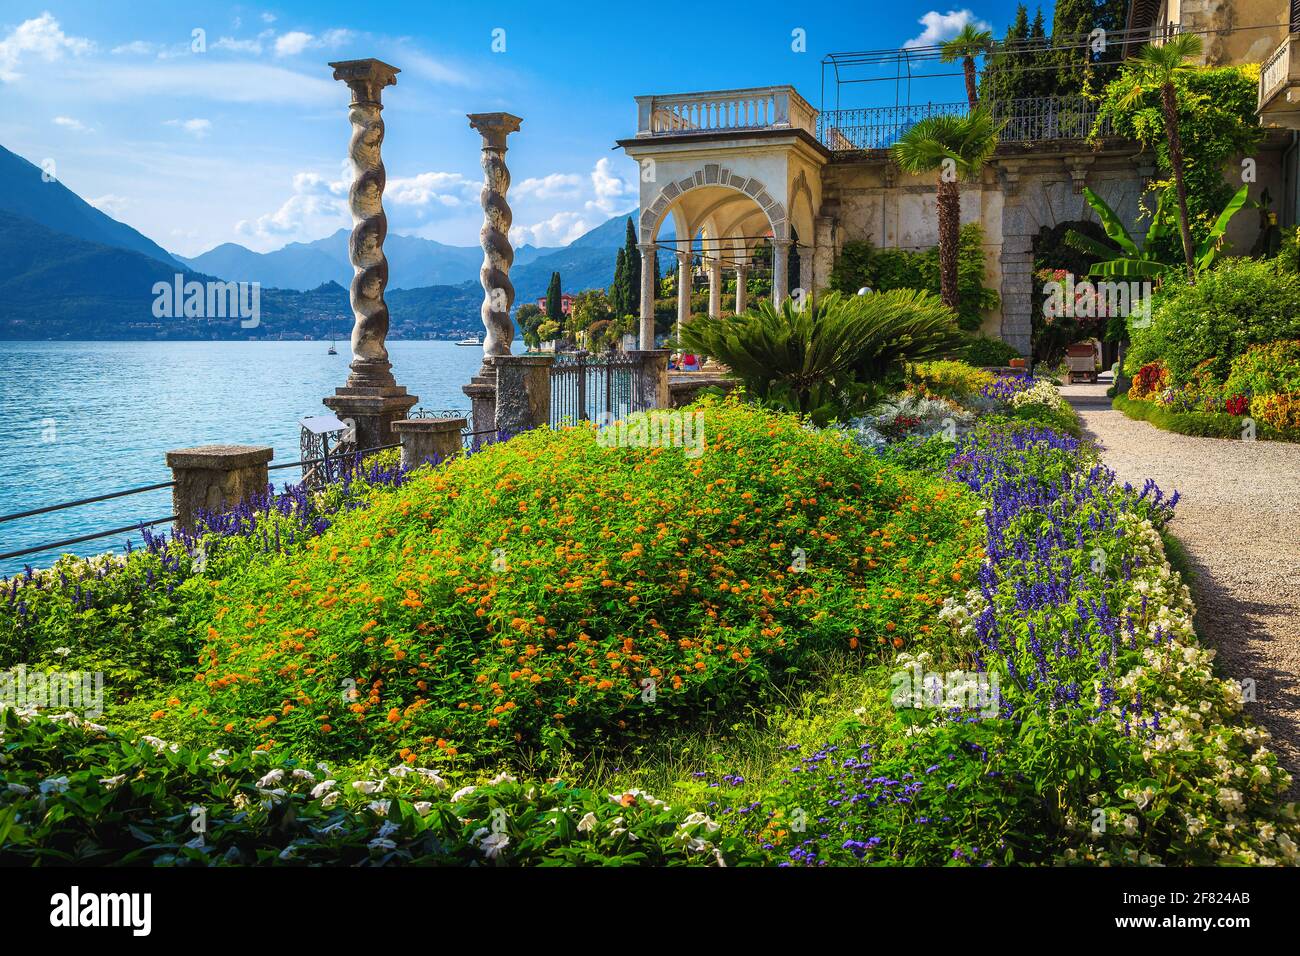 Magnifique jardin ornemental en bord de mer avec allées fleuries, Varenna, lac de Côme, Lombardie, Italie, Europe Banque D'Images